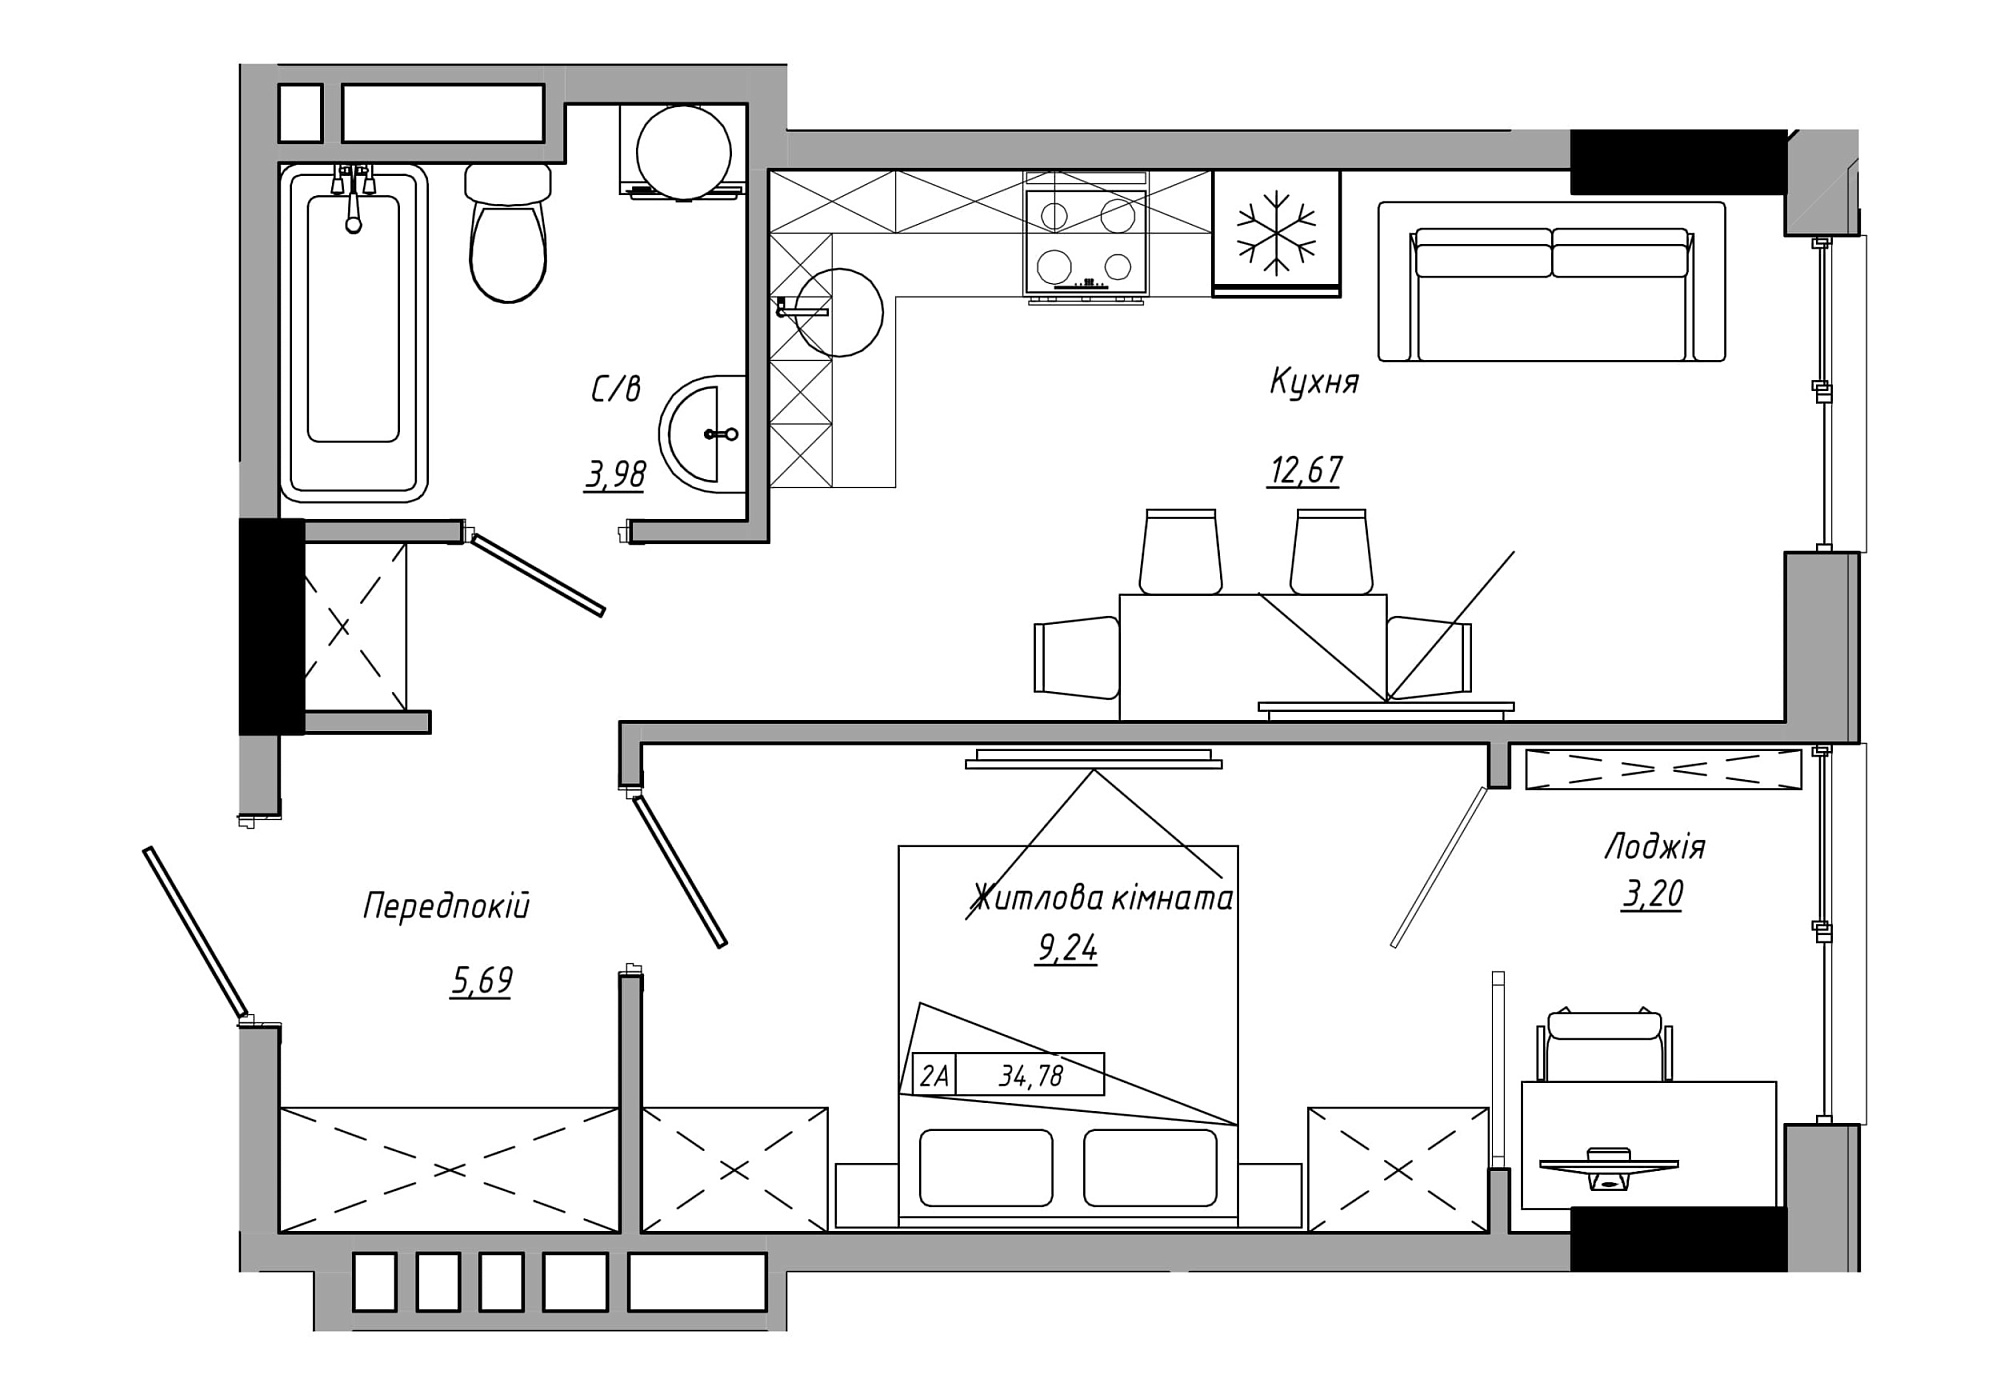 Планування 1-к квартира площею 34.78м2, AB-21-07/00002.